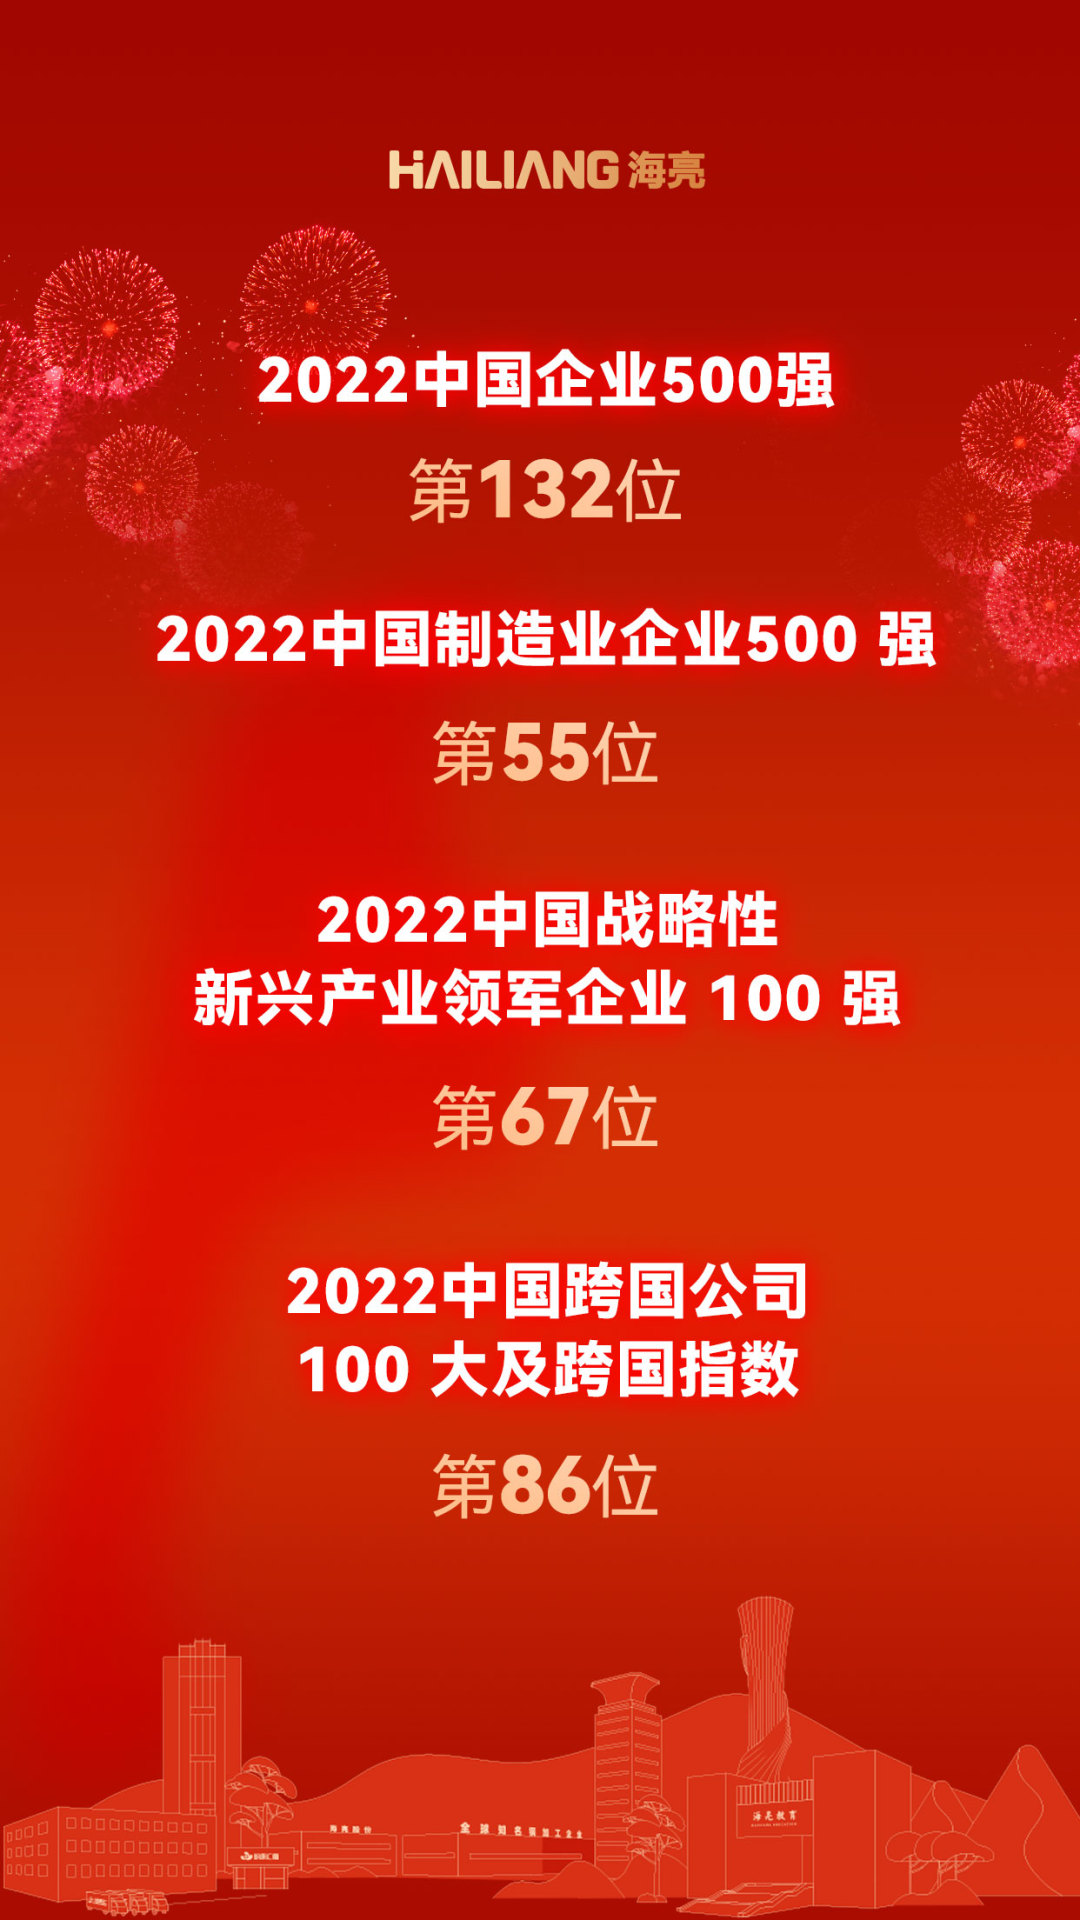 2022中国企业500强榜单发布 海亮集团连续19年入榜